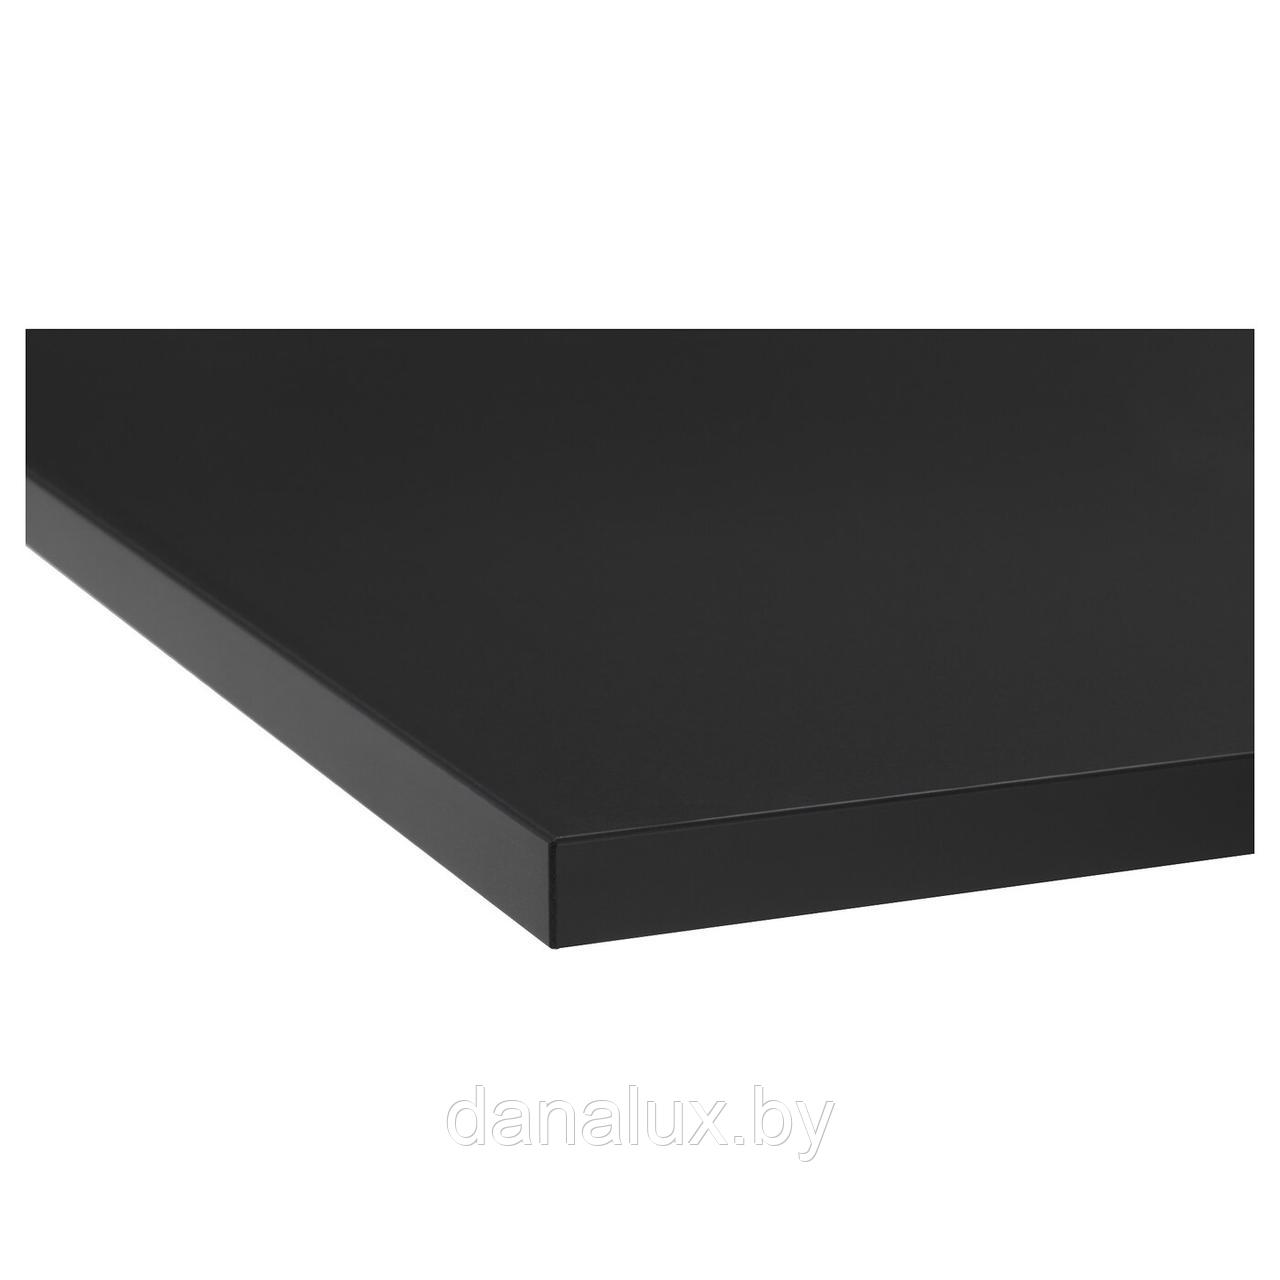 Столешница Дана Топ постформинг цвет черный 140 см + влагостойкий лак